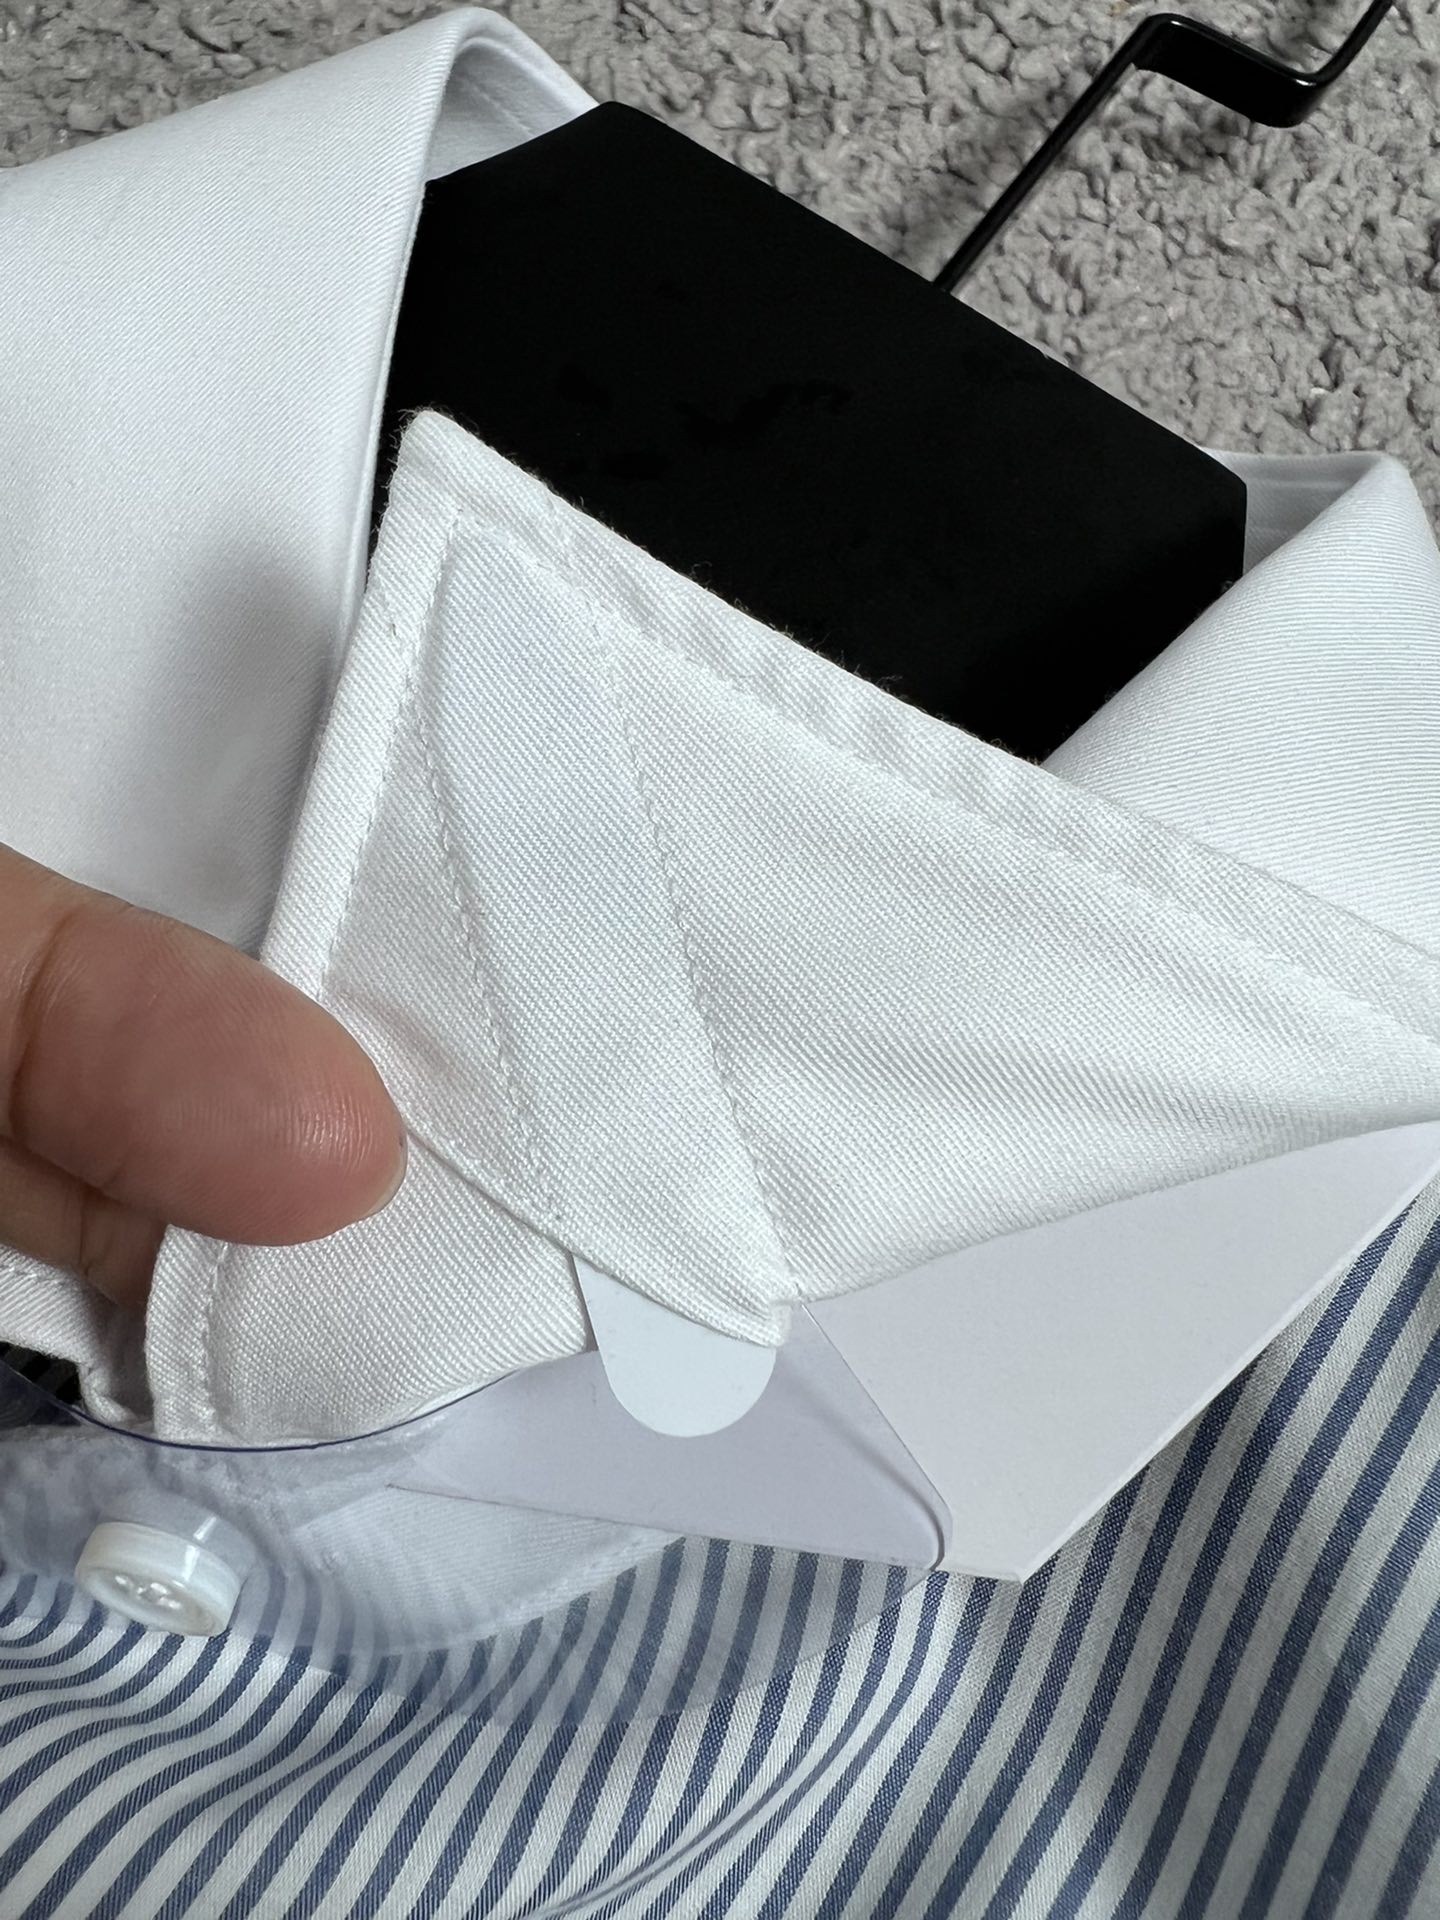 CD迪家24SS春夏高端系列条纹撞布法式袖扣衬衫SMLXLXXL